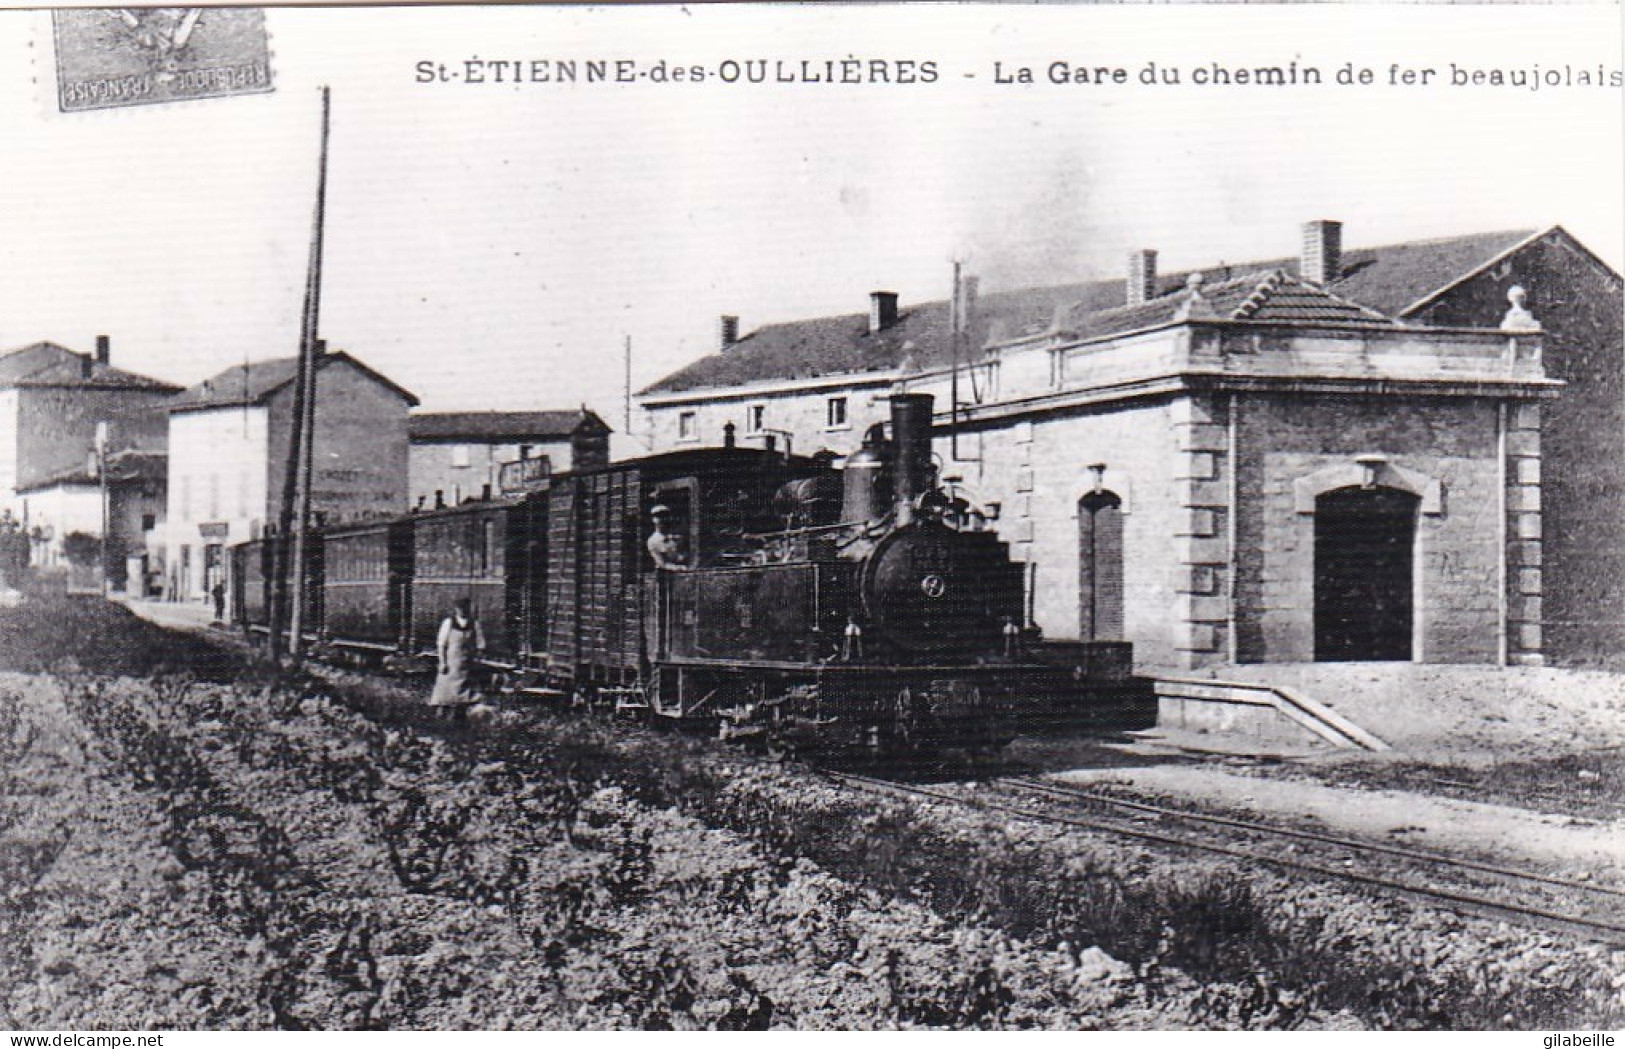 Photo - 69 - Rhone - SAINT ETIENNE Des OULLIERES - La Gare Du C.F.B  - Ligne De Monsols-  Retirage - Unclassified